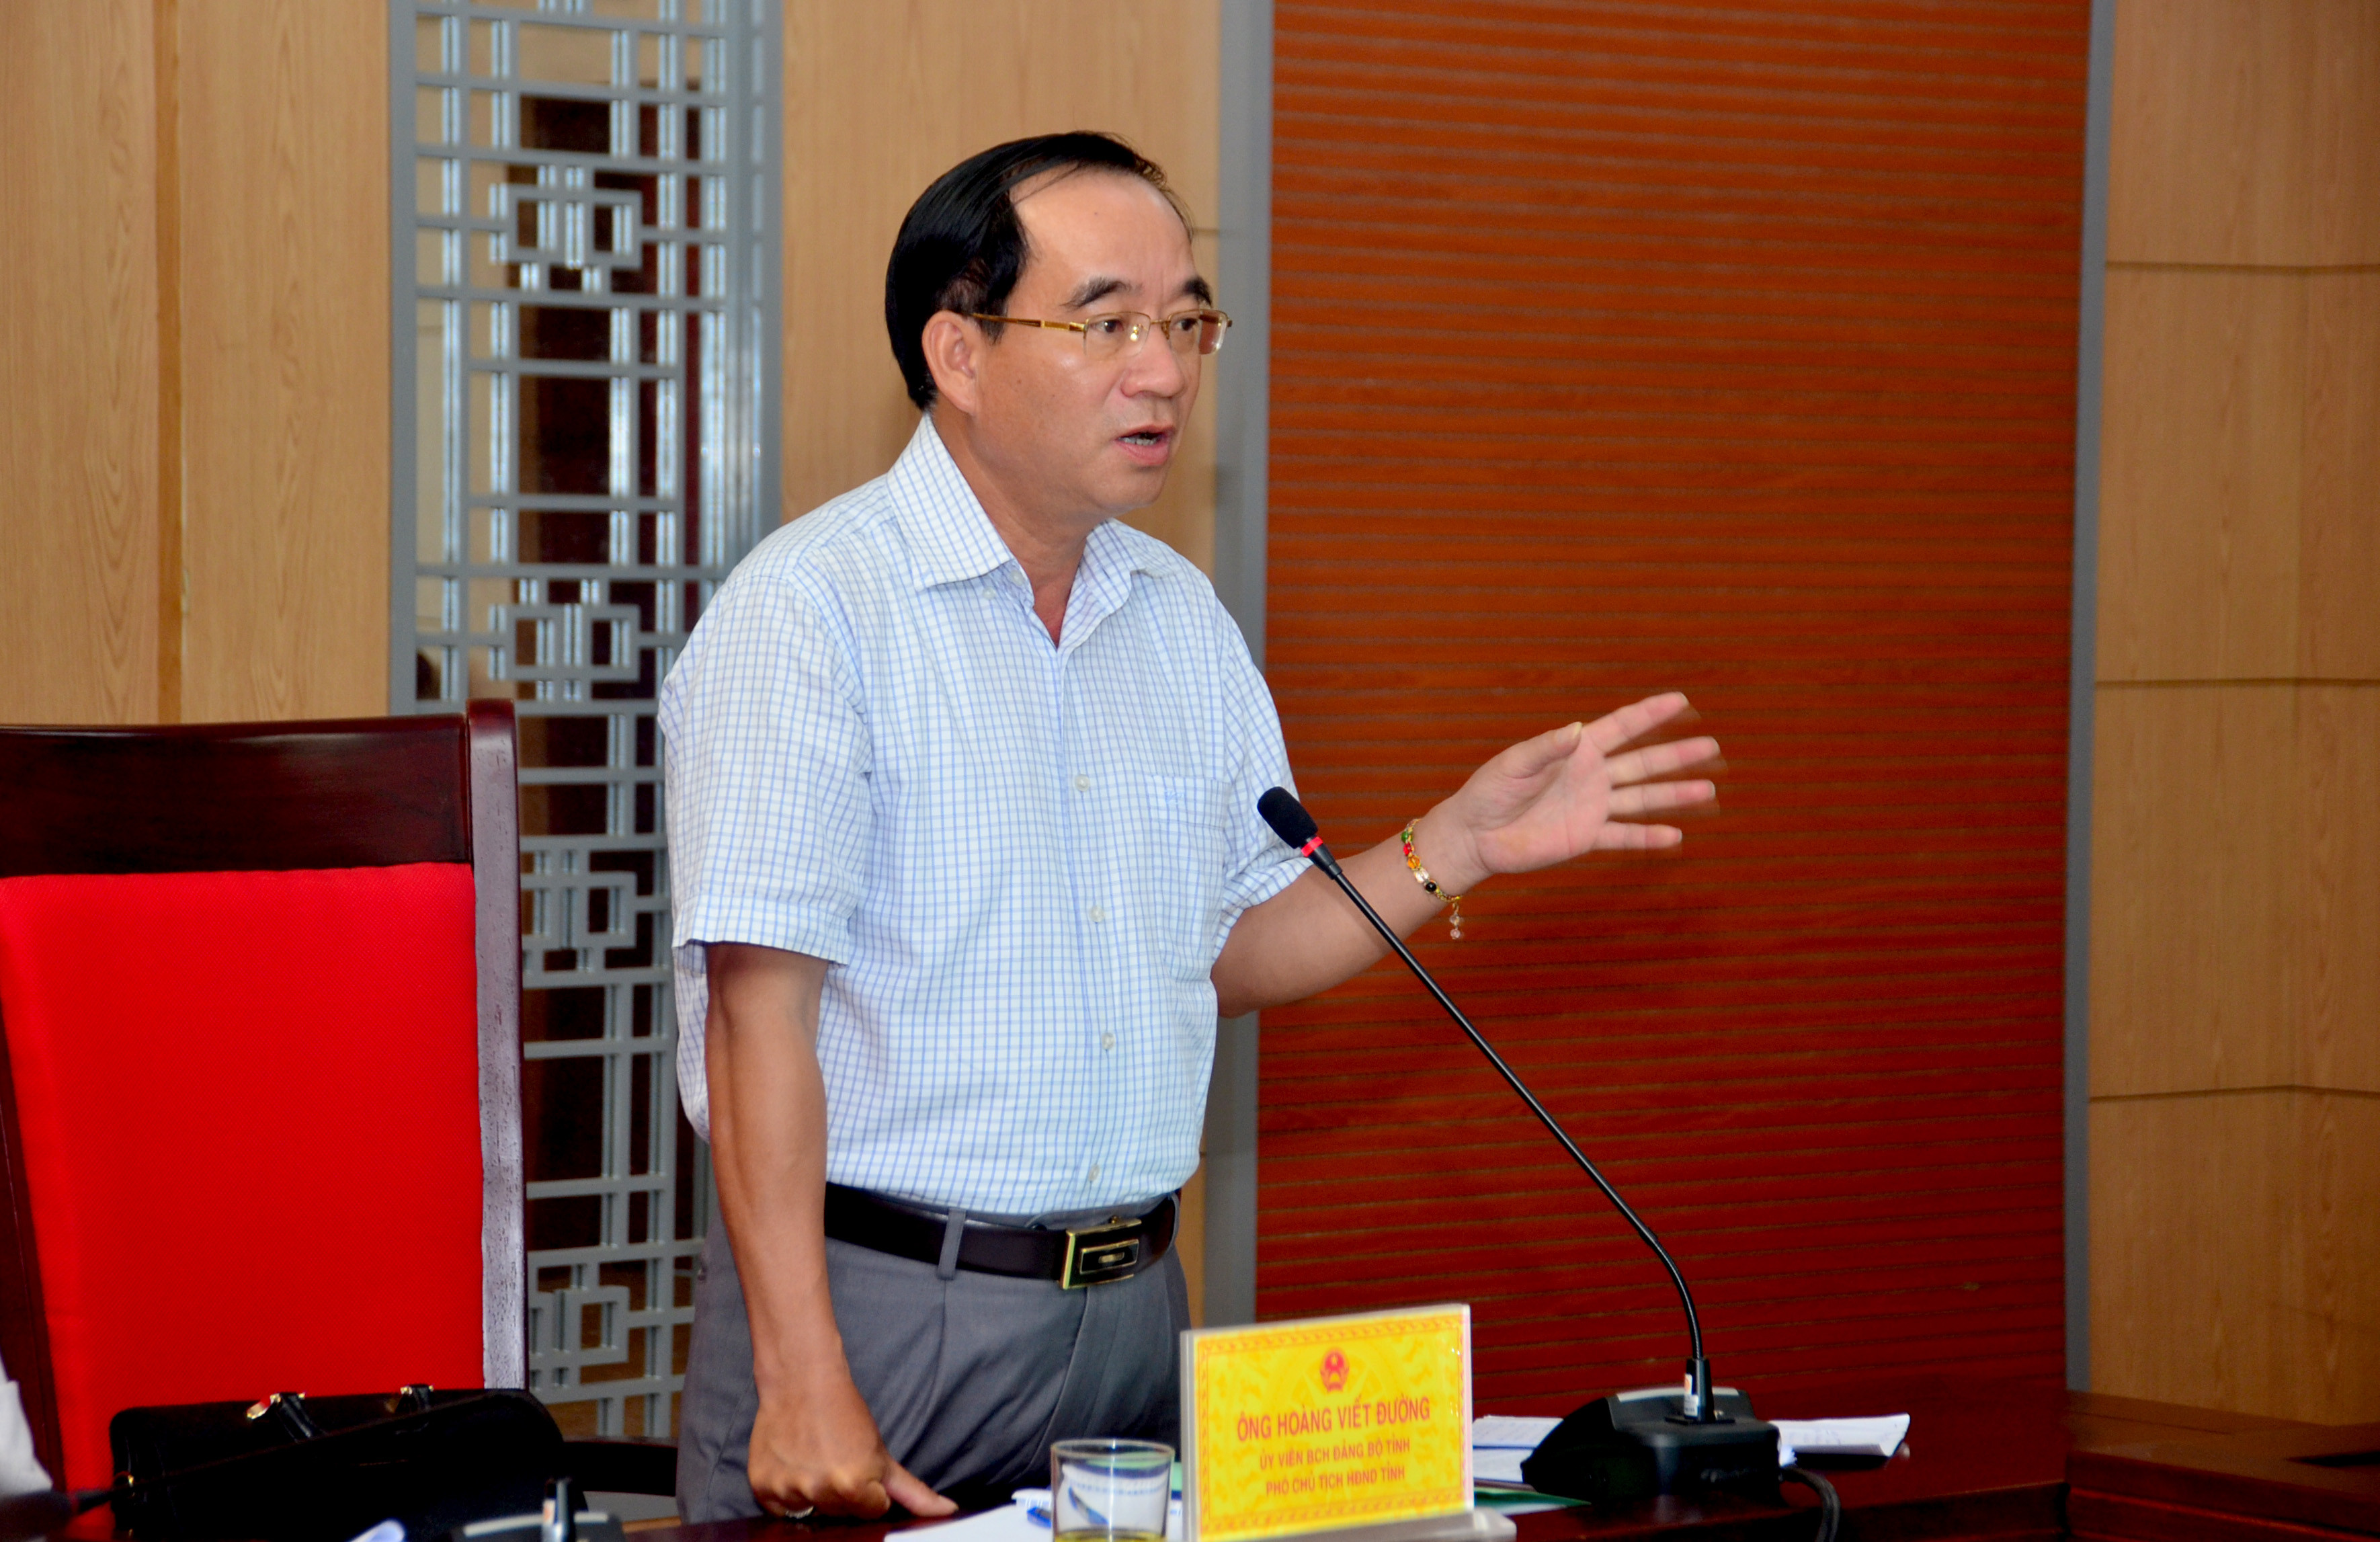 Phó Chủ tịch HĐND tỉnh Hoàng Viết Đường phát biểu tại cuộc làm việc. Ảnh: Thành Duy